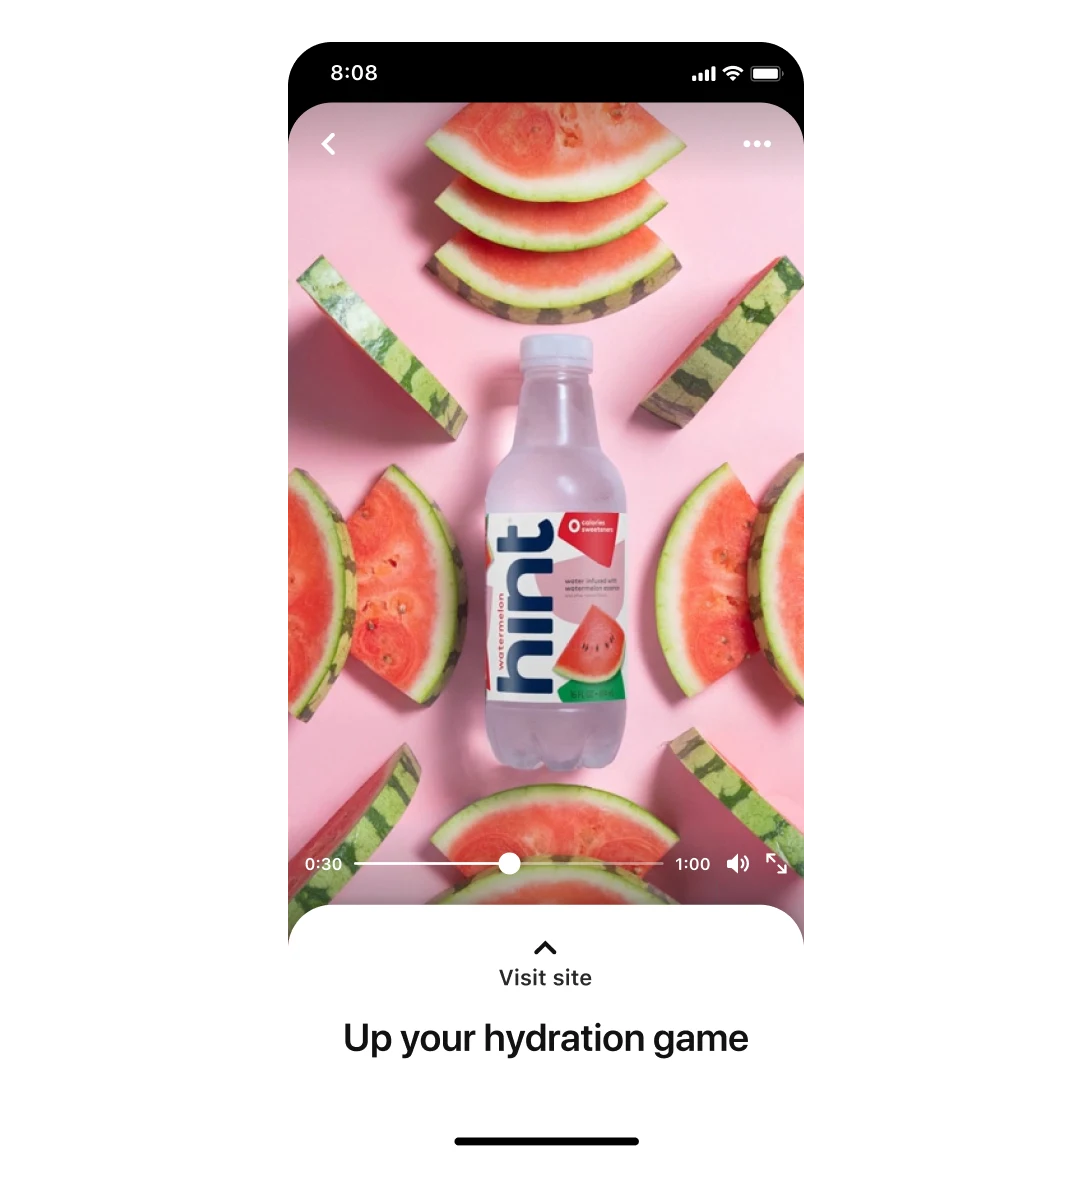 Экран мобильного устройства с премиум-размещением объявления от Hint, в котором рекламируется вода со вкусом арбуза и изображены ломтики. Надпись на изображении: «Забудьте о жажде».